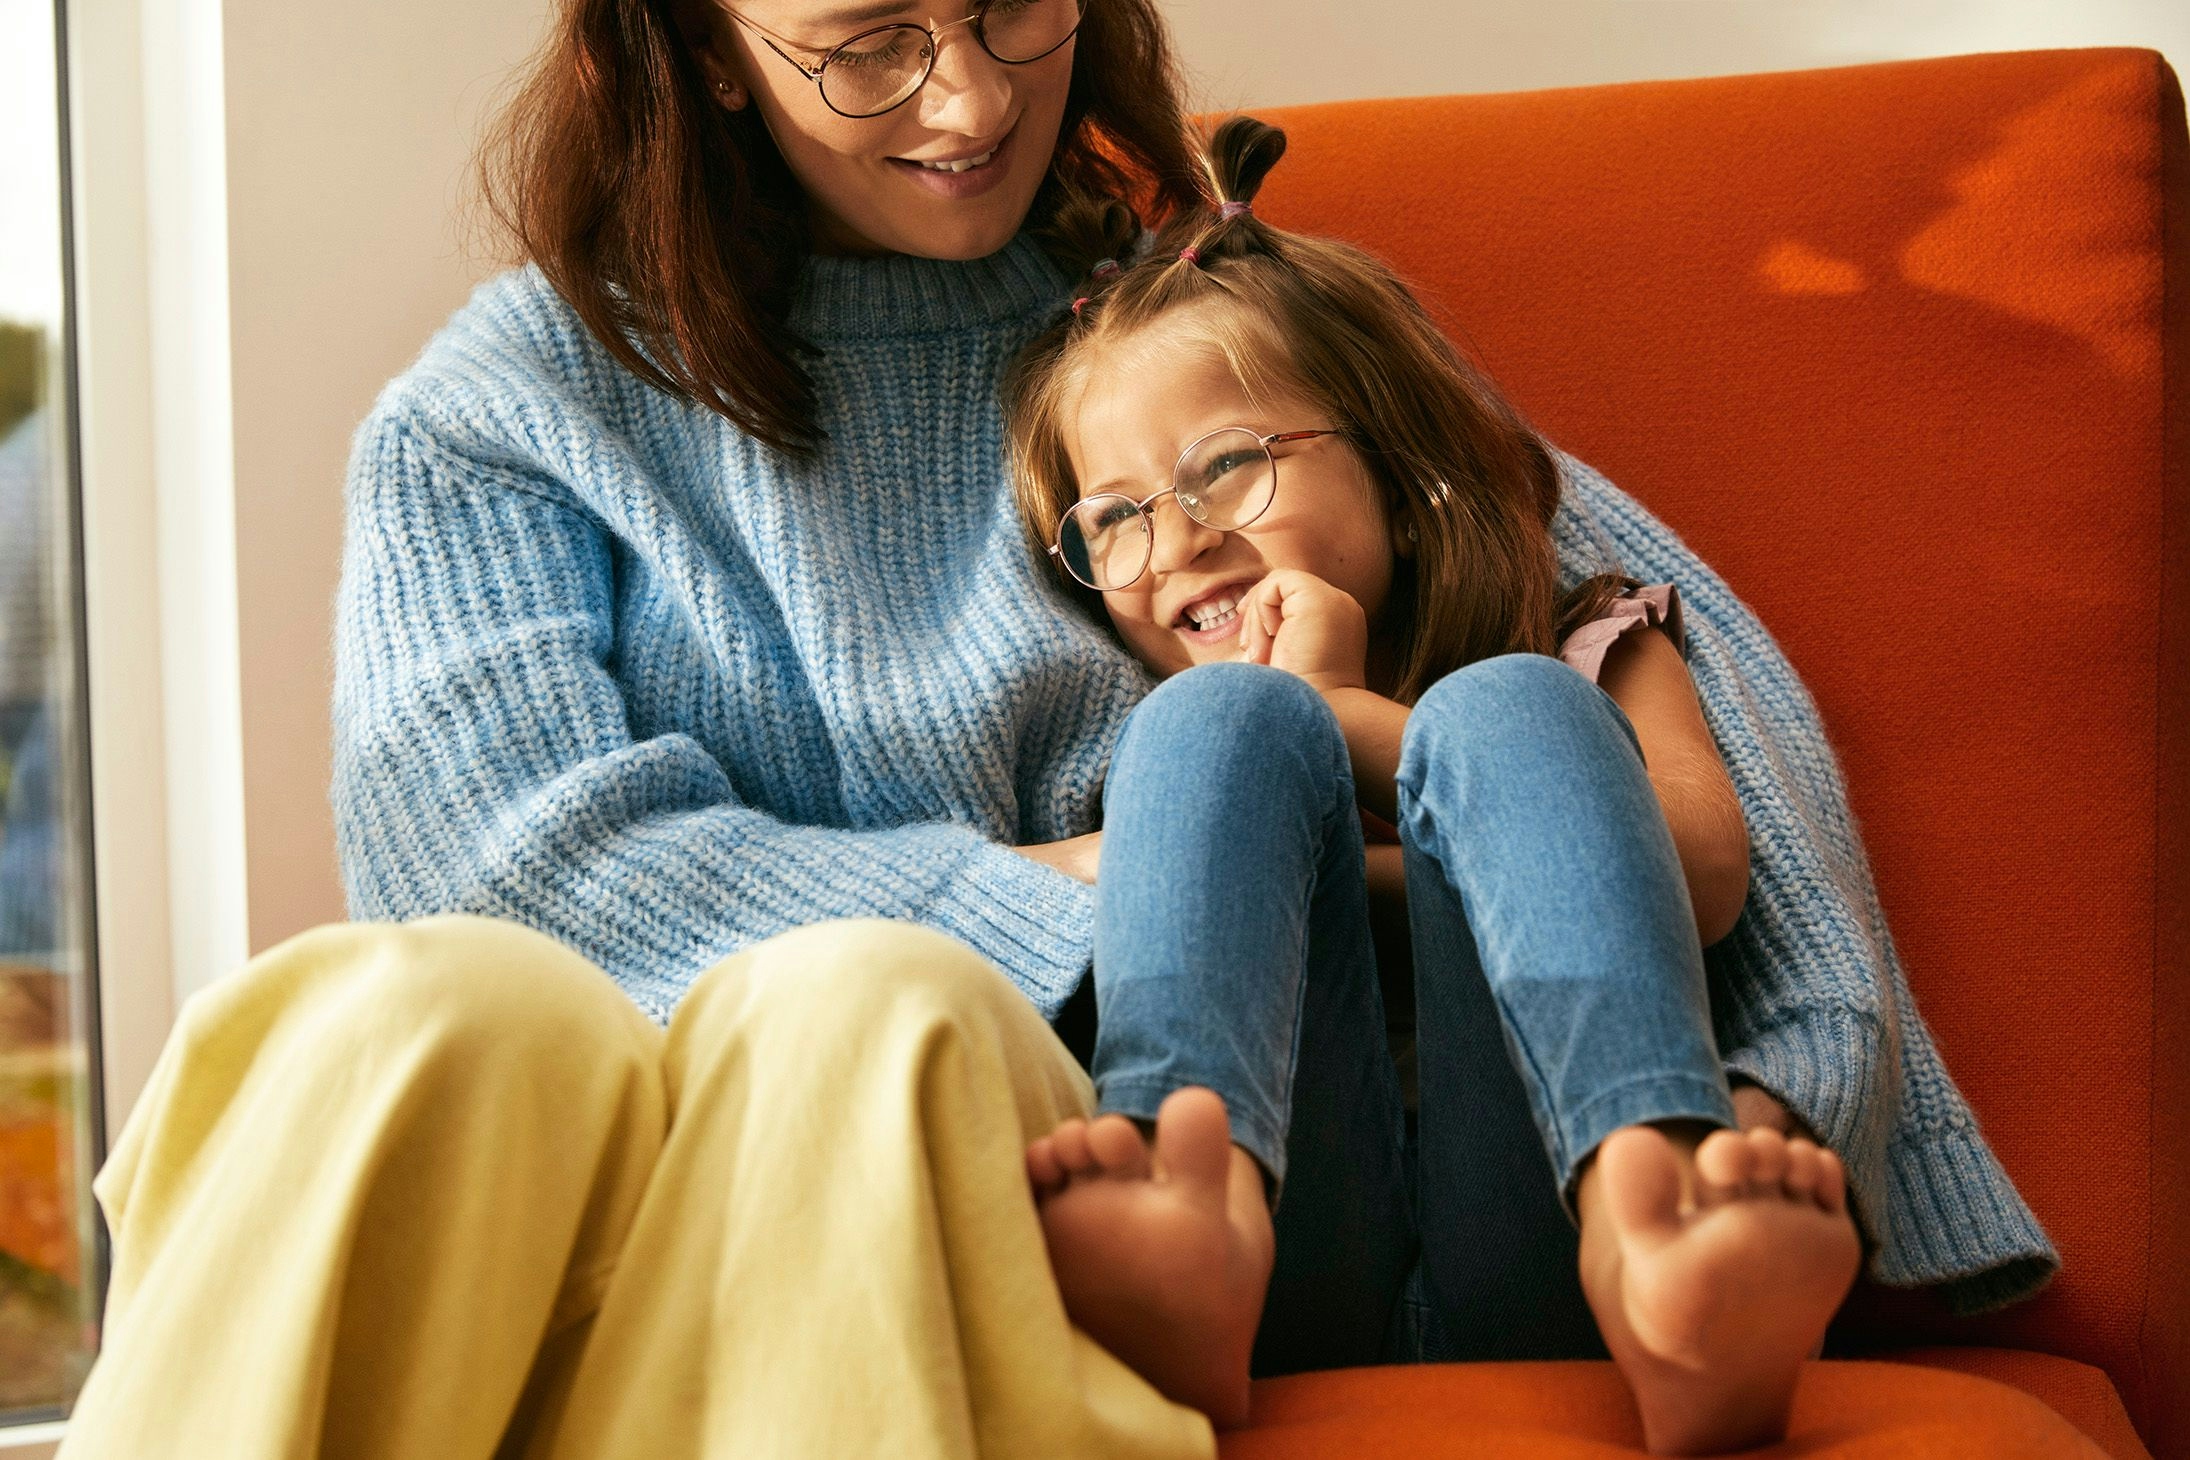 Mor sitter med datter armkroken i en oransje stol. Moren ser ned på datteren og datteren smiler og ser ut i rommet.